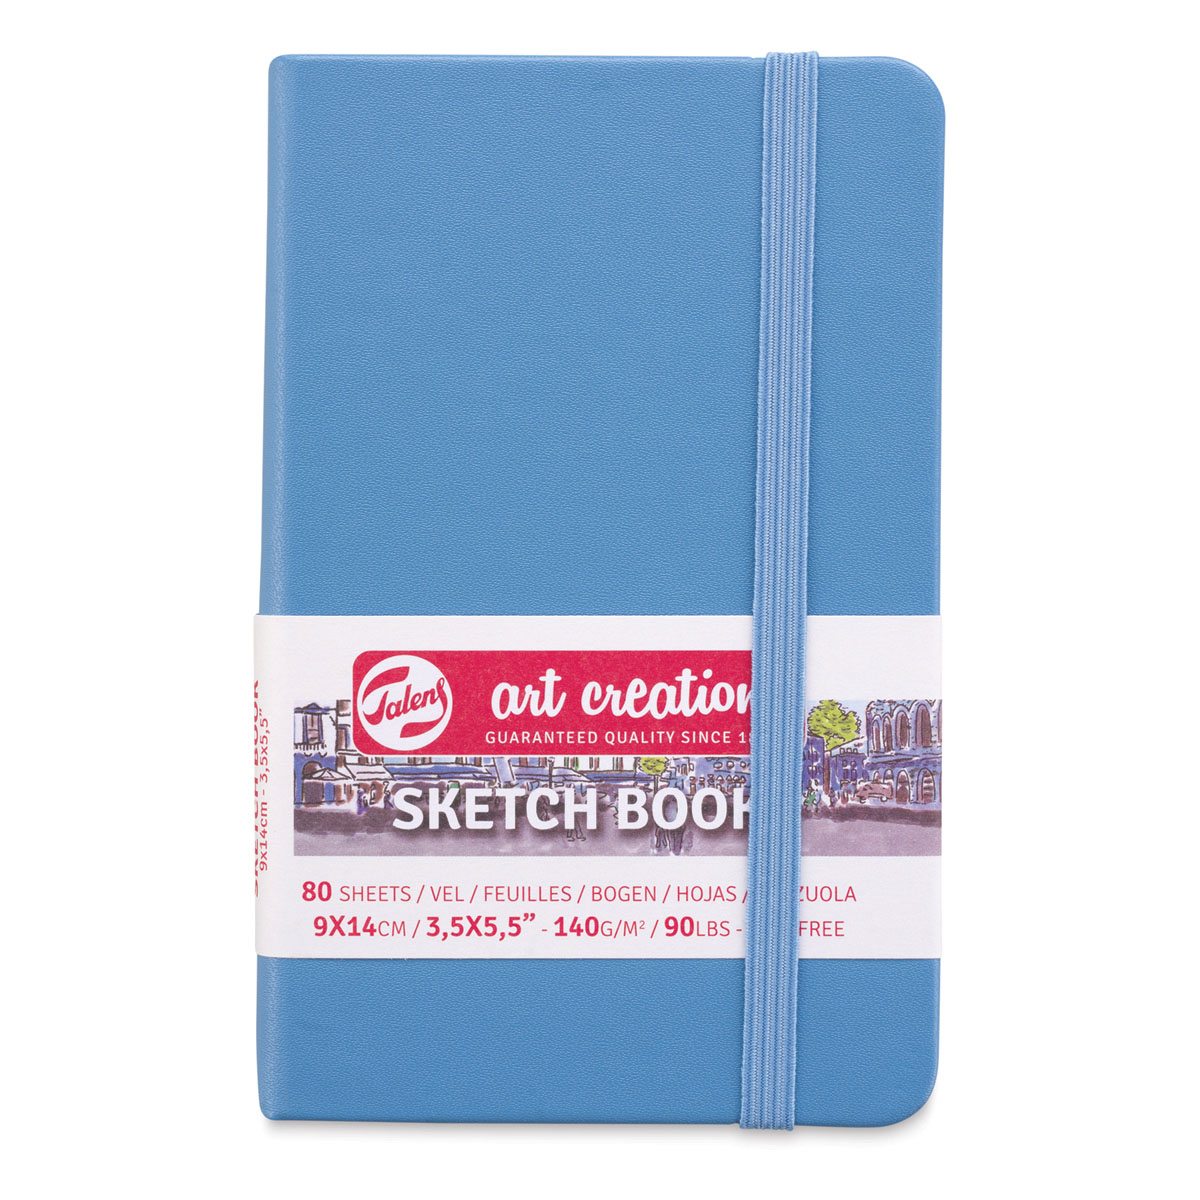 Sketchbook Forest Green 9 x 14 cm 140 g 80 Sheets